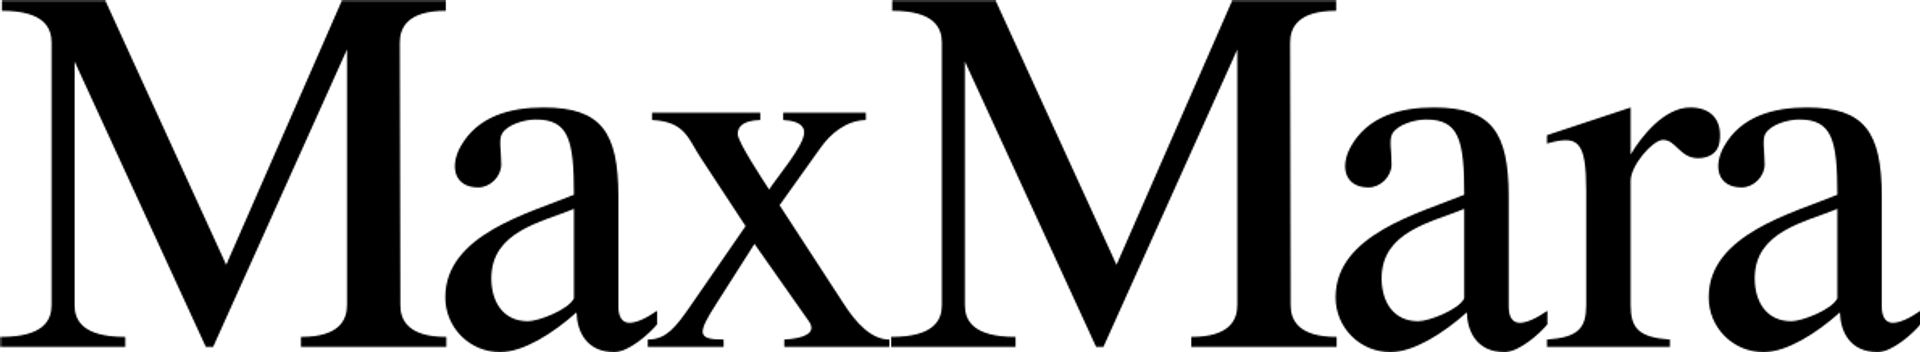 MAXMARA logo die aktuell Flugblatt